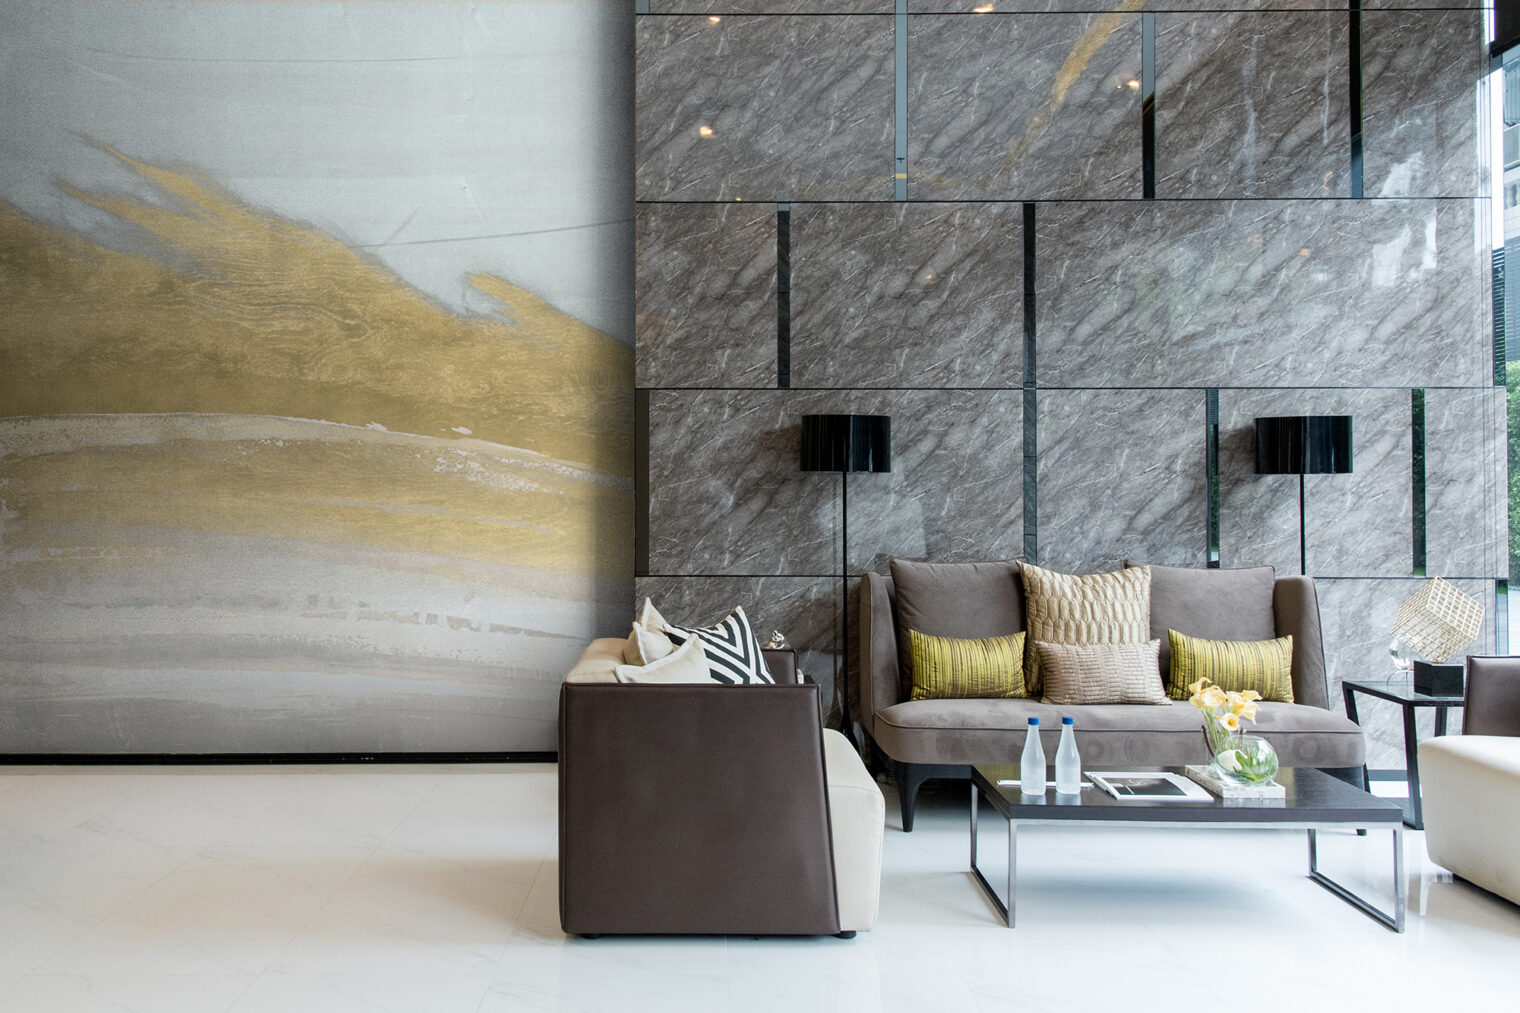 ホテルロビーの大理石調の壁装材に合わせたゴールドを主役にした壁紙が、空間をよりラグジュアリーな印象に引き立てる。